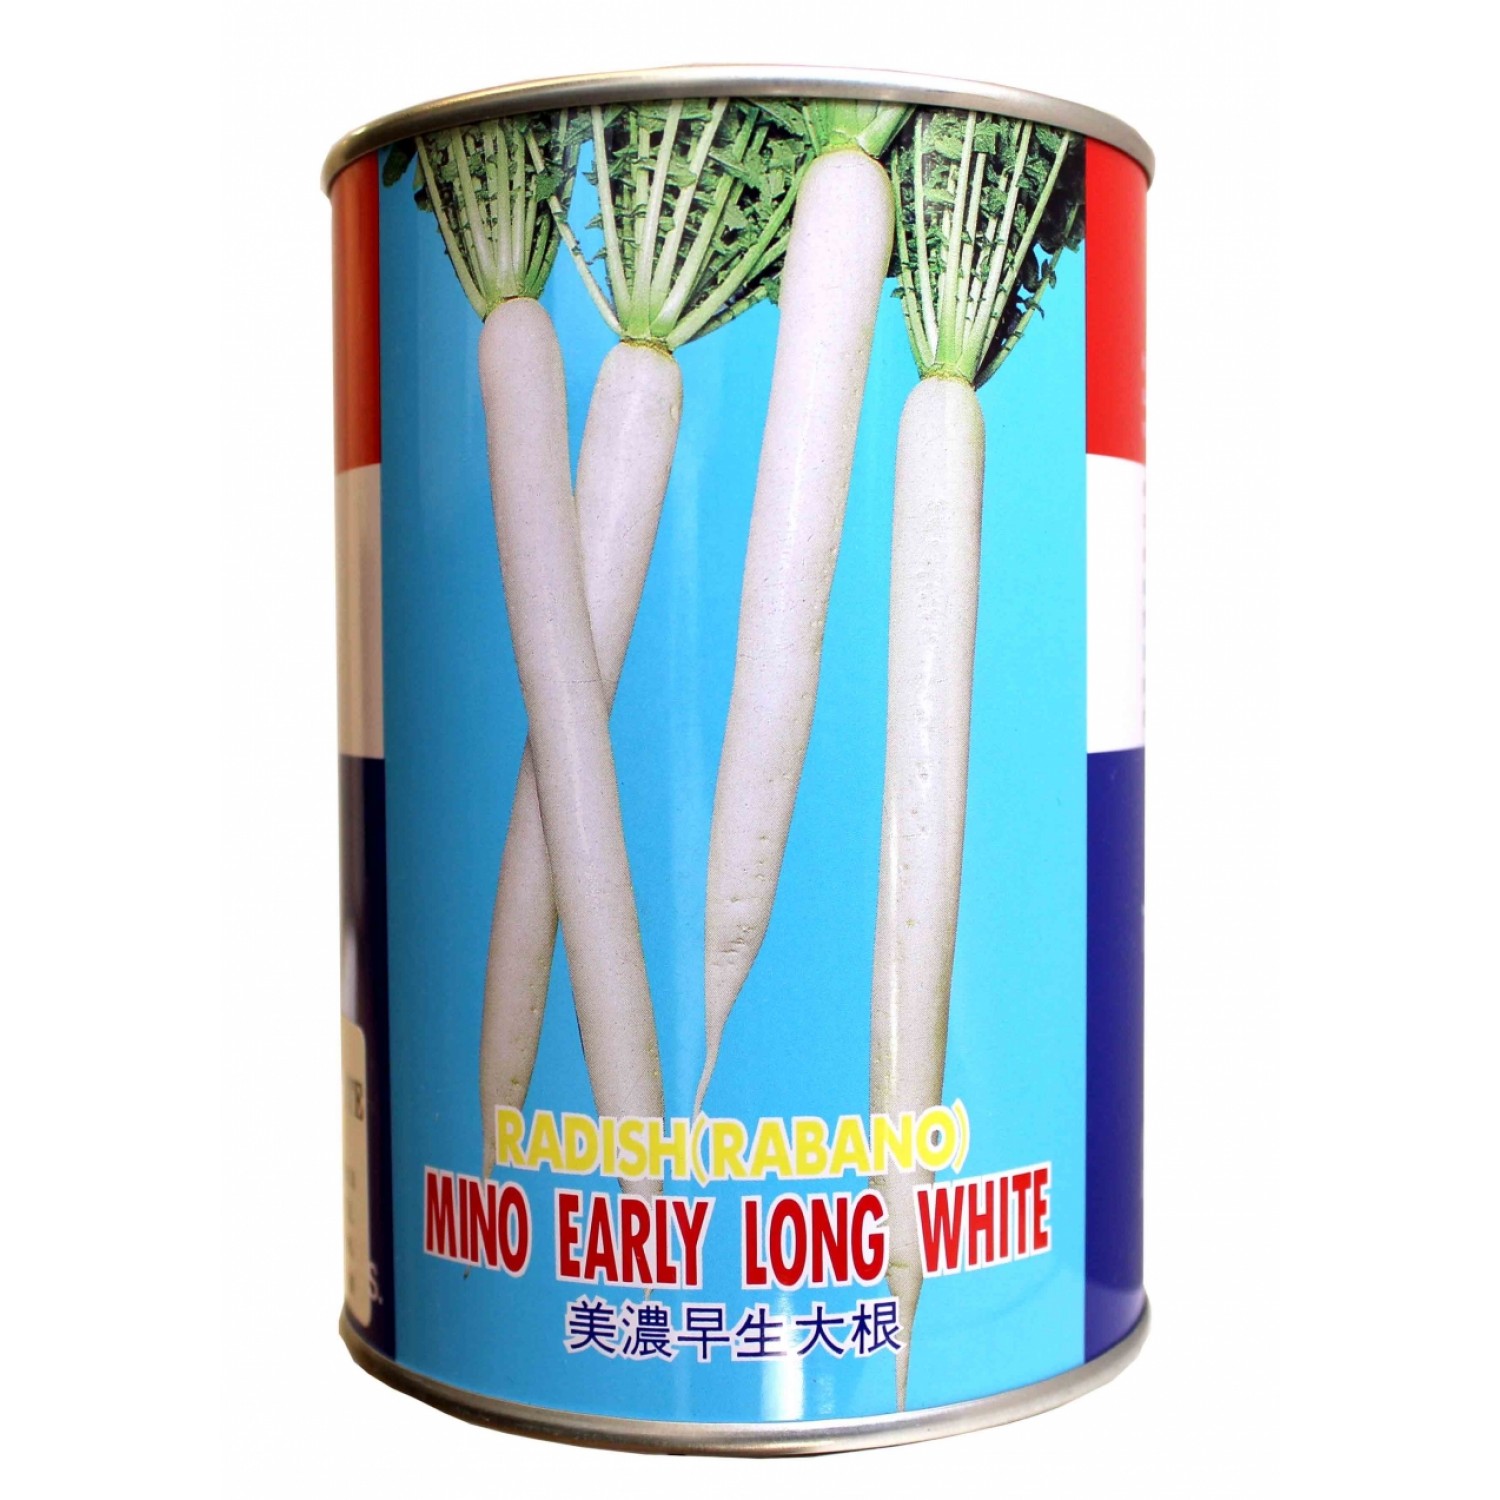 بذر ترب سفید ماینو ارلی تاکی - Mino Early Long White takii